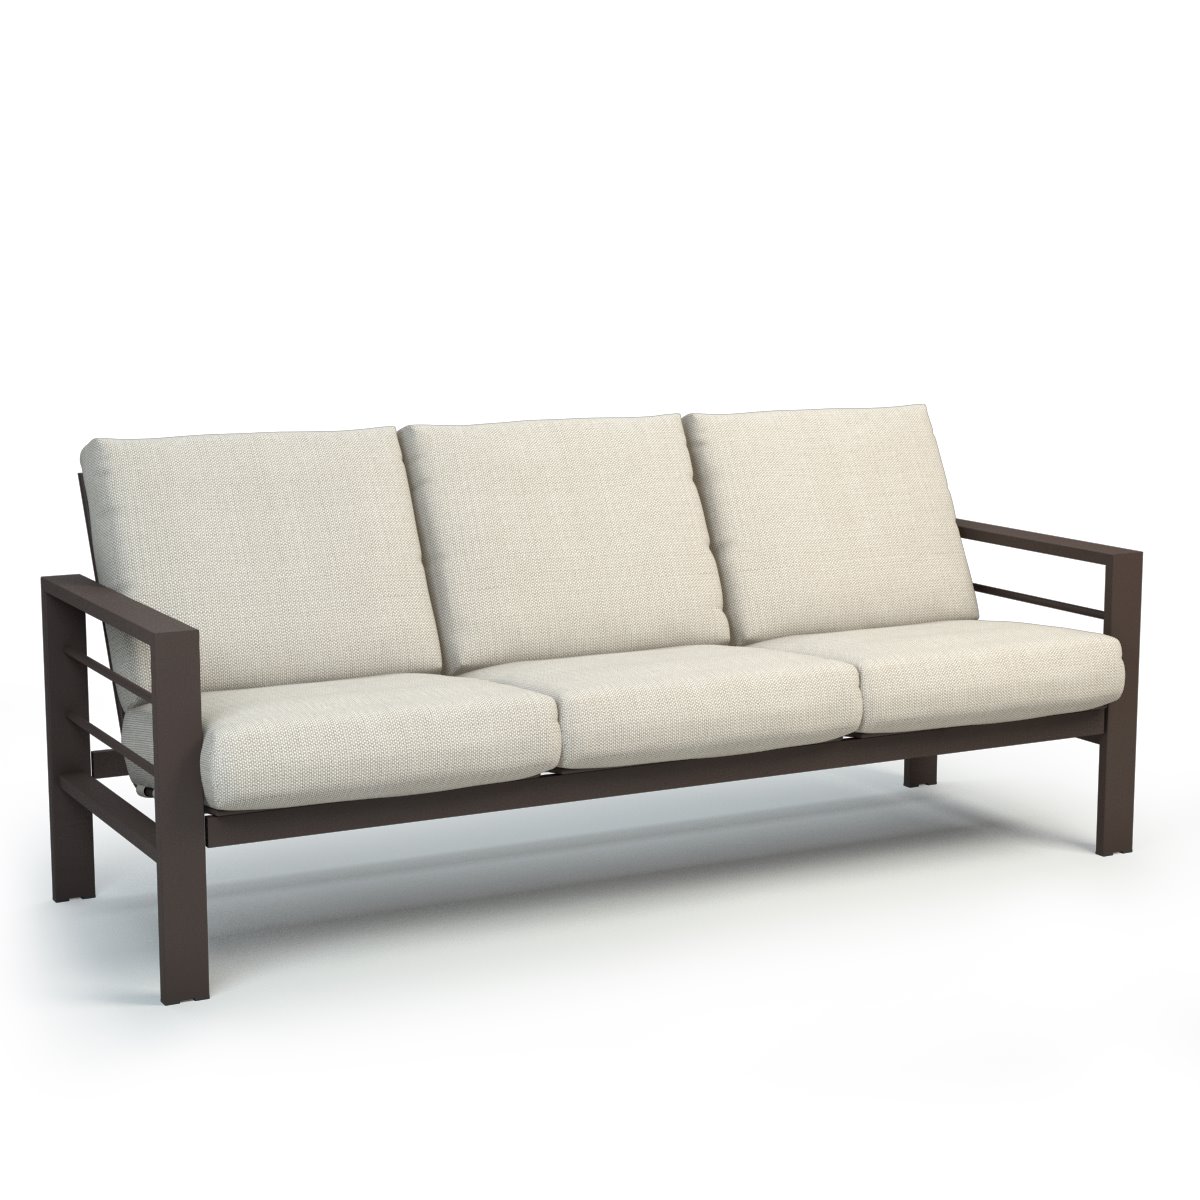 Homecrest Sutton Cushion Sofa - 4543A